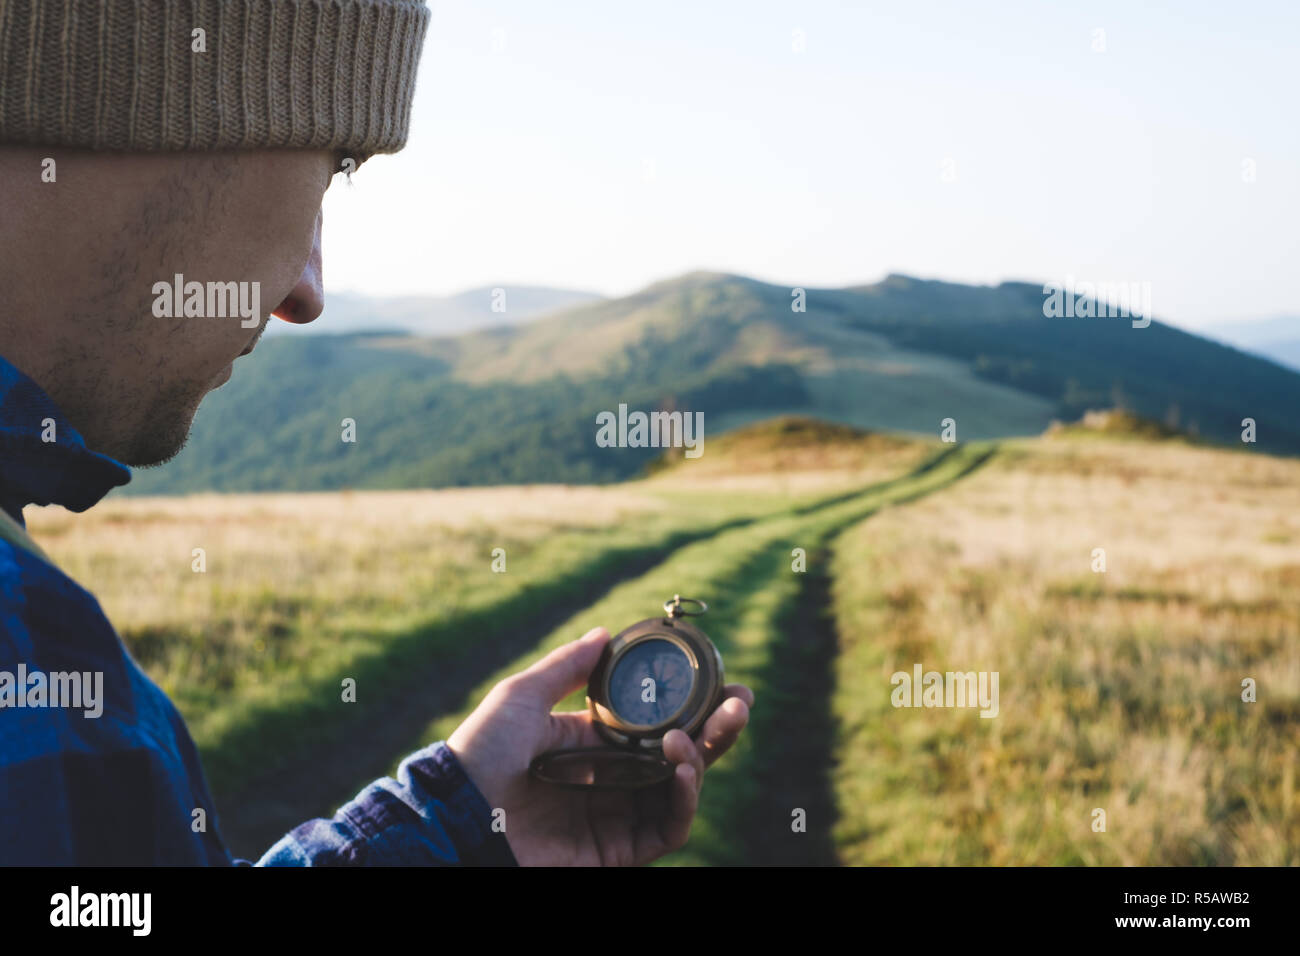 Homme avec boussole dans la main sur la route des montagnes. Concept de voyage. Photographie de paysage Banque D'Images